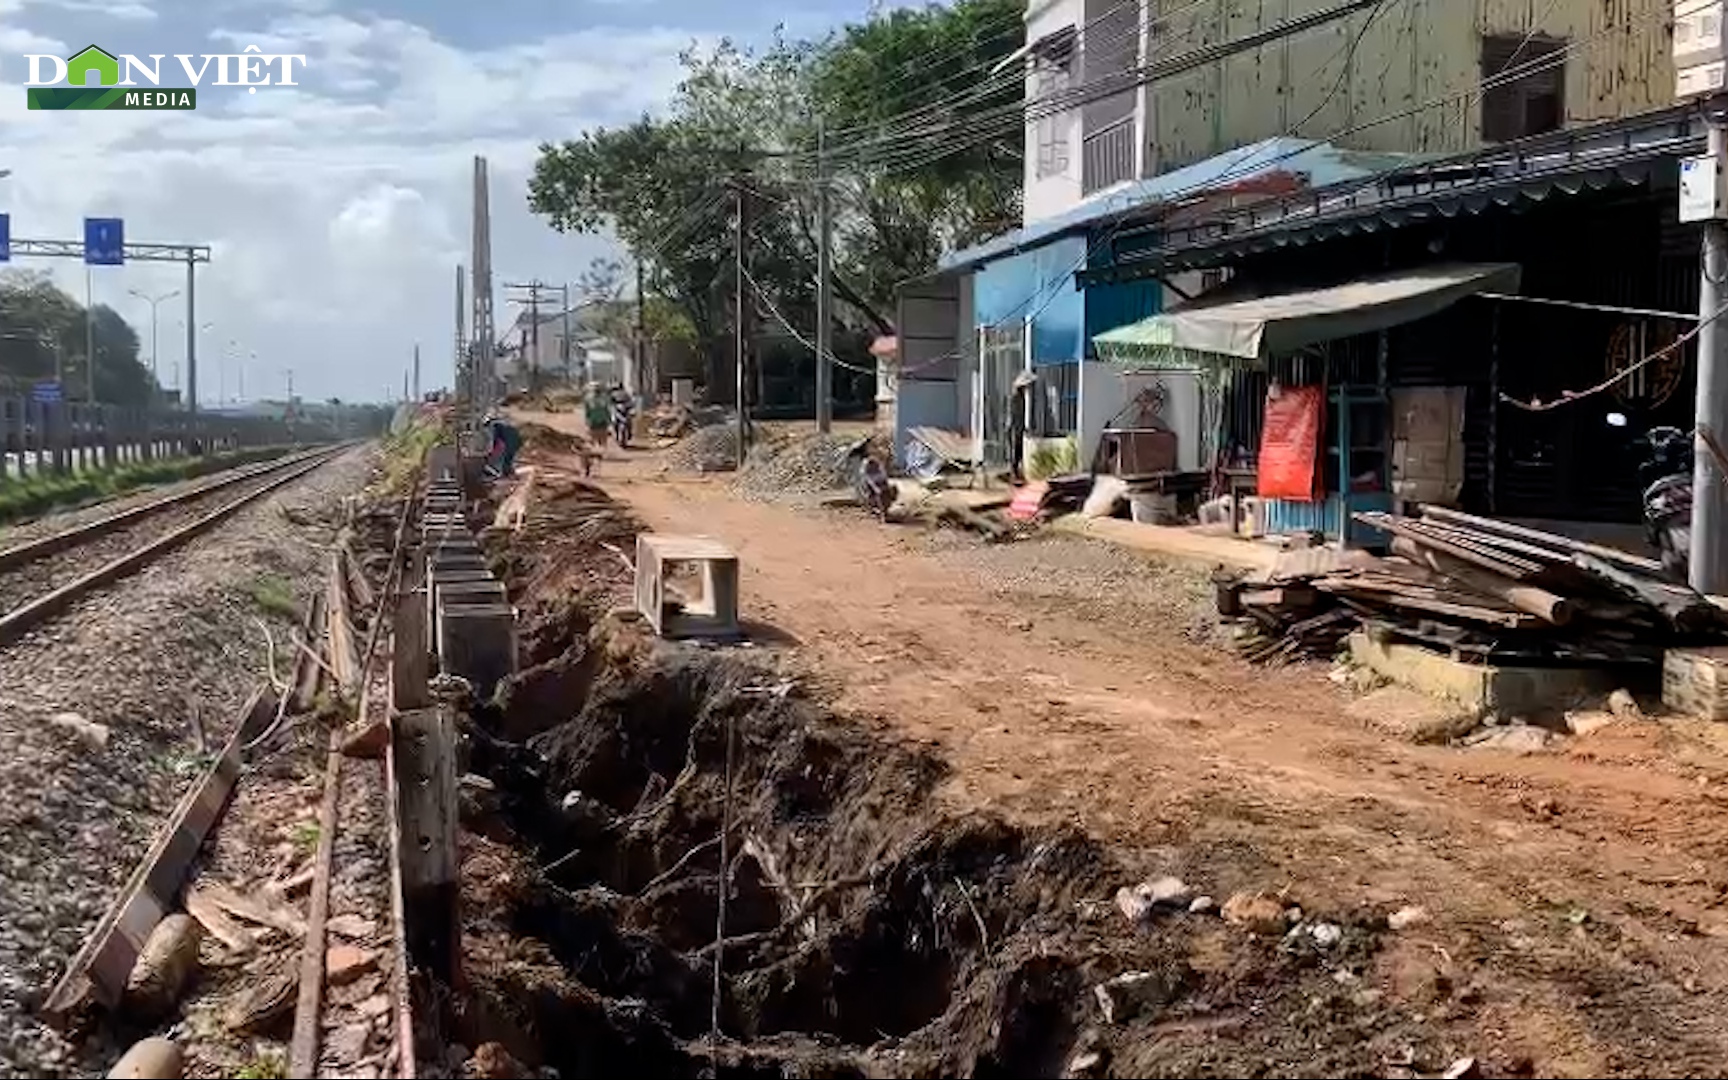 Đà Nẵng: Vỉa hè bị xới tung, ngổn ngang bùn đất tại dự án đường gom dọc đường sắt